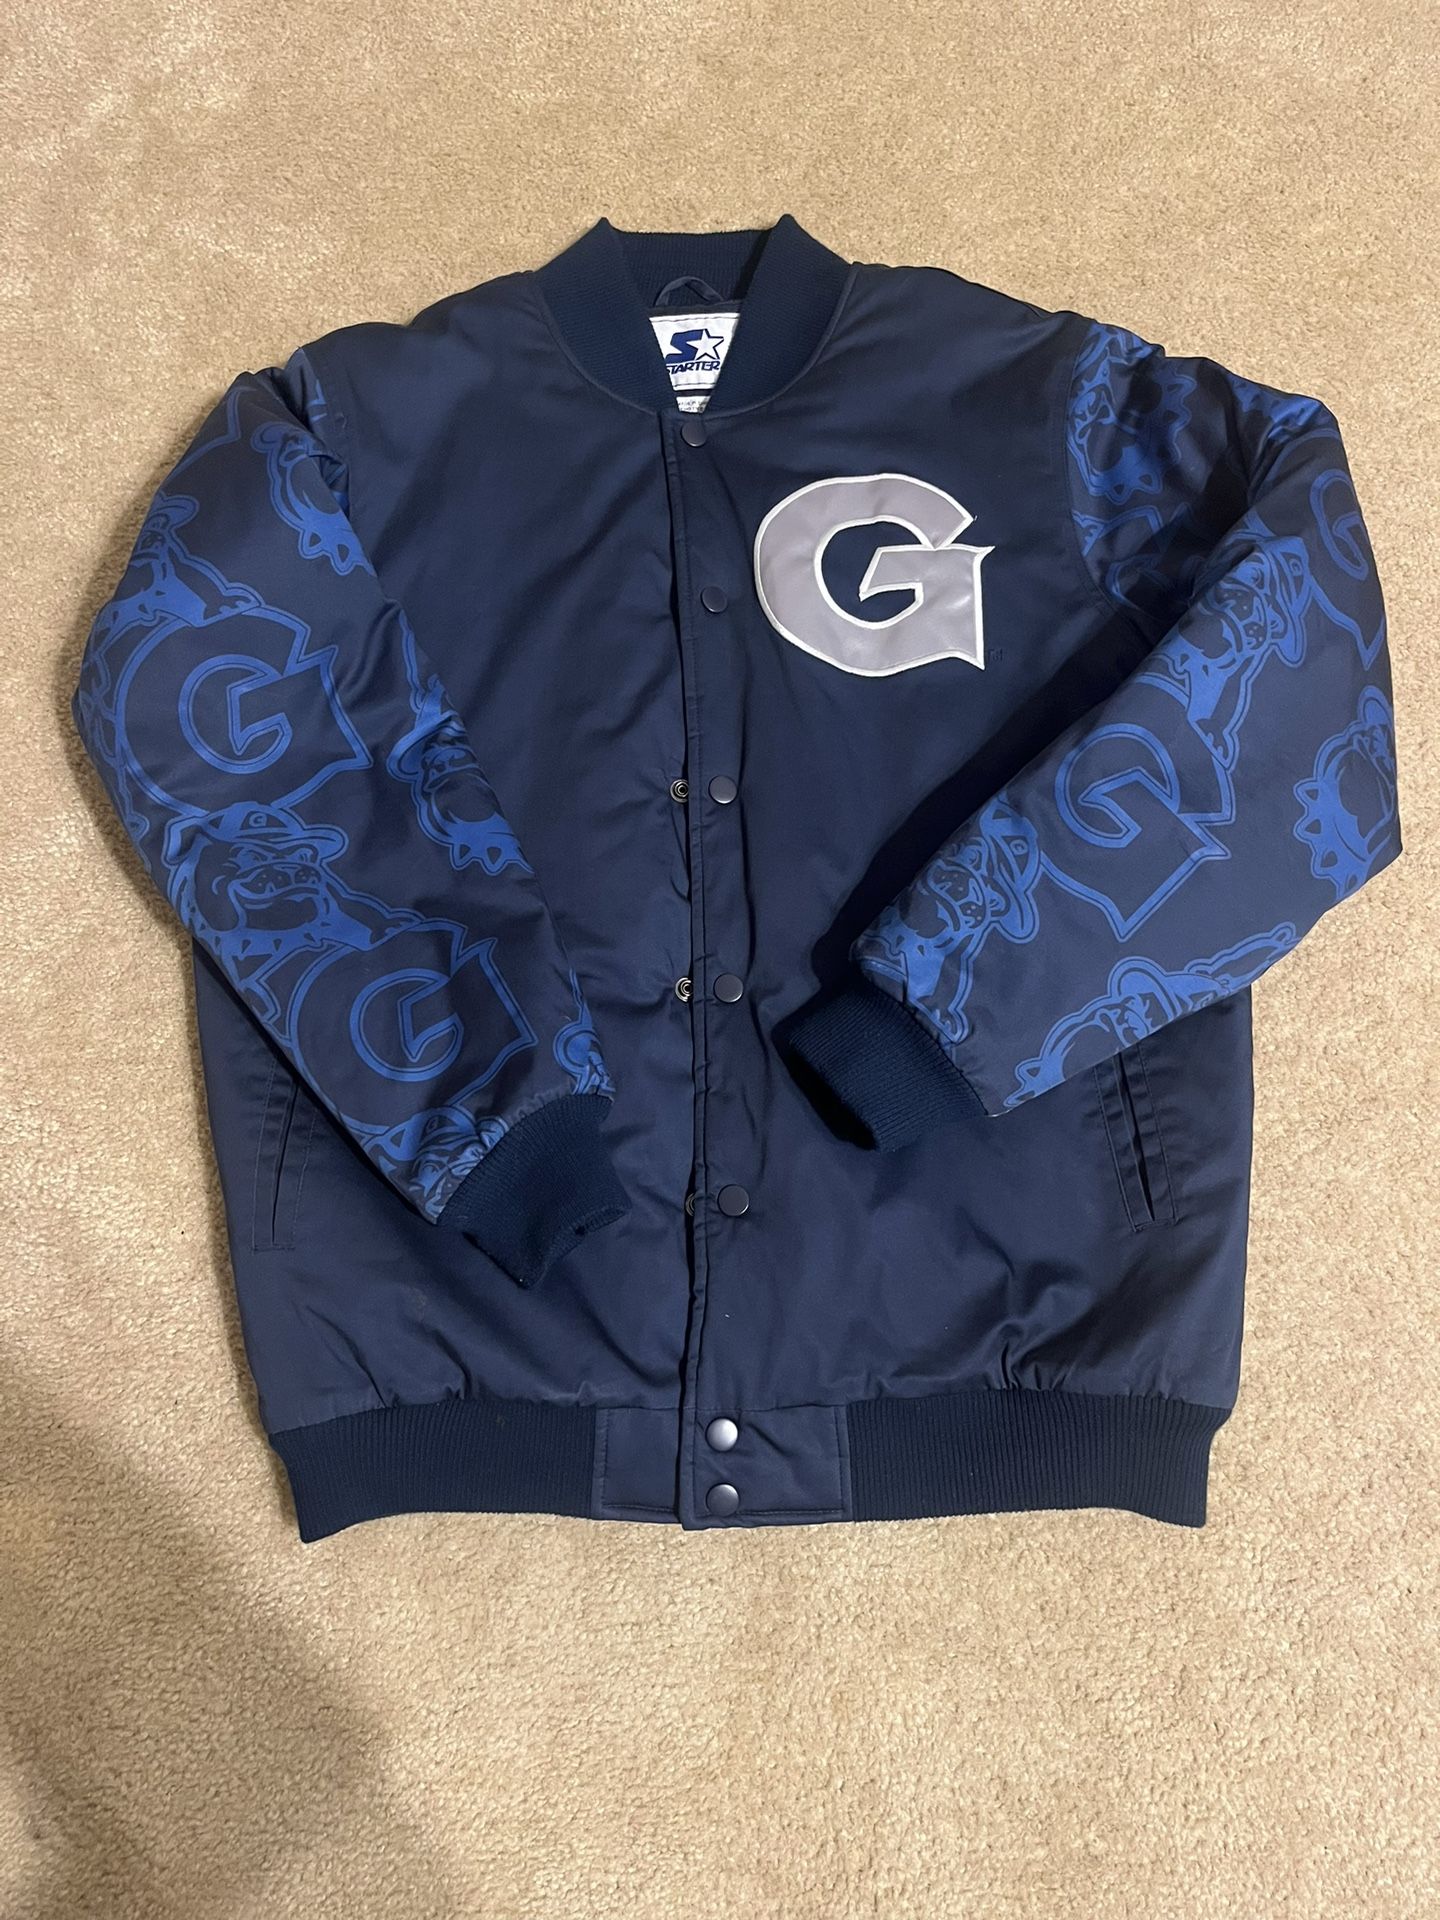 Georgetown Hoyas Starter Jacket